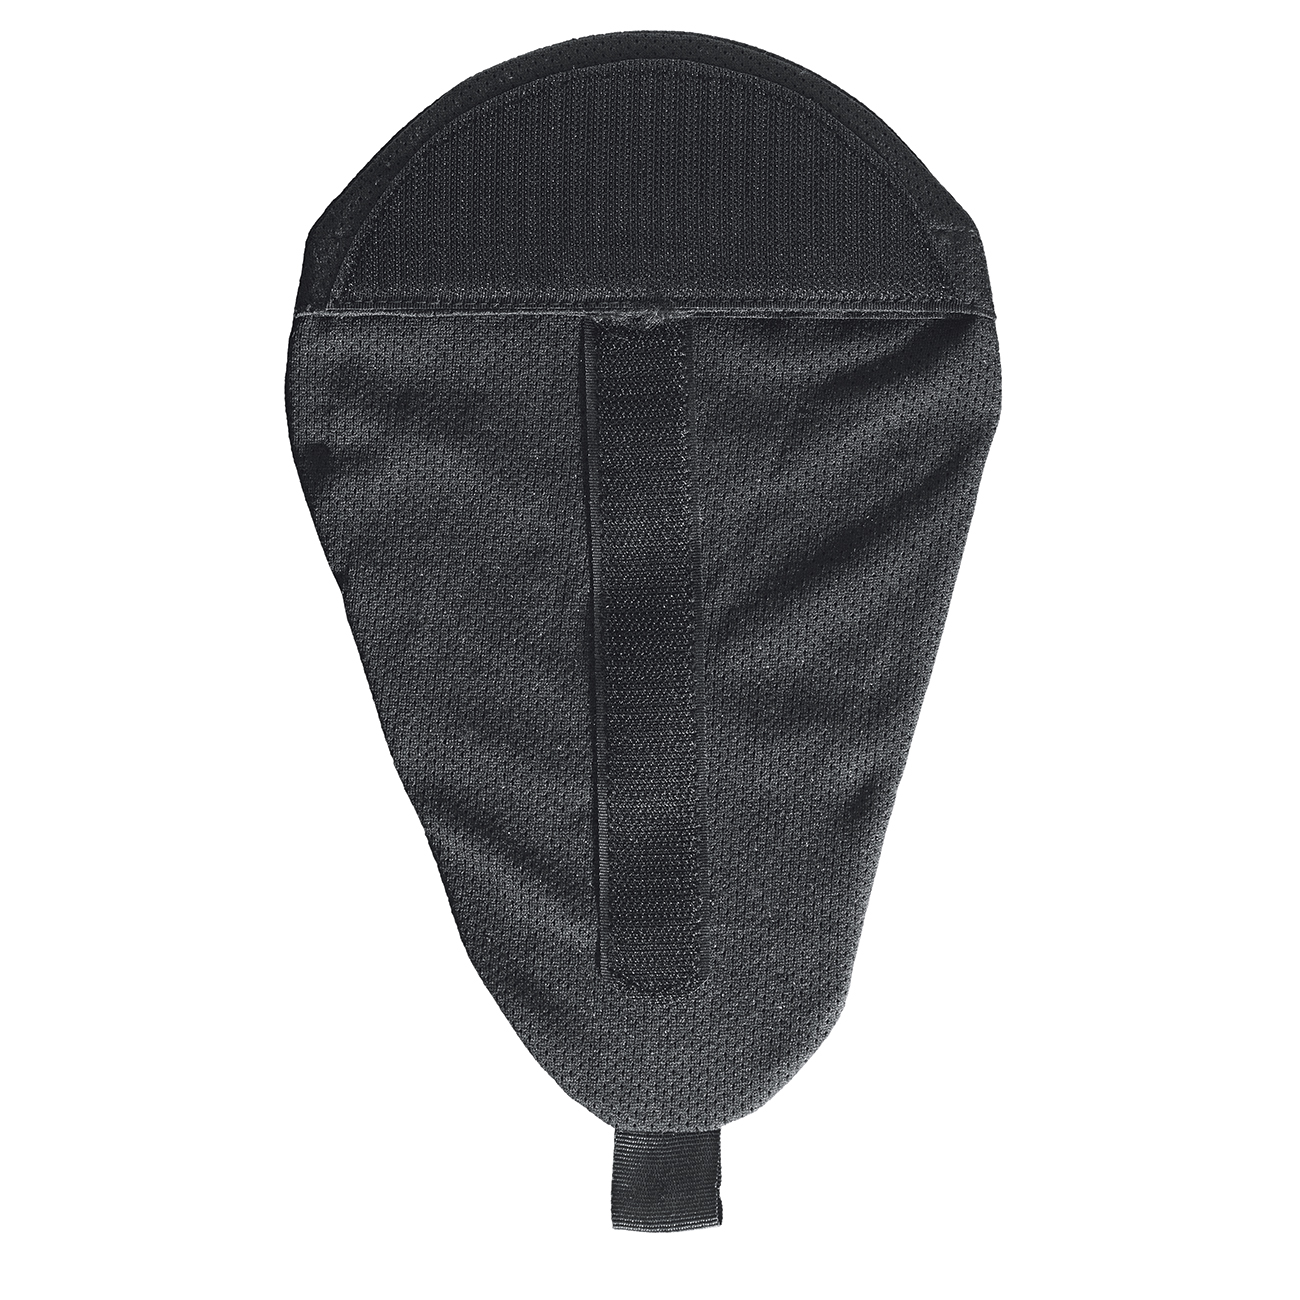 Protektoren-Kletttasche Safe-Tech Schulter, Knie, Hüfte